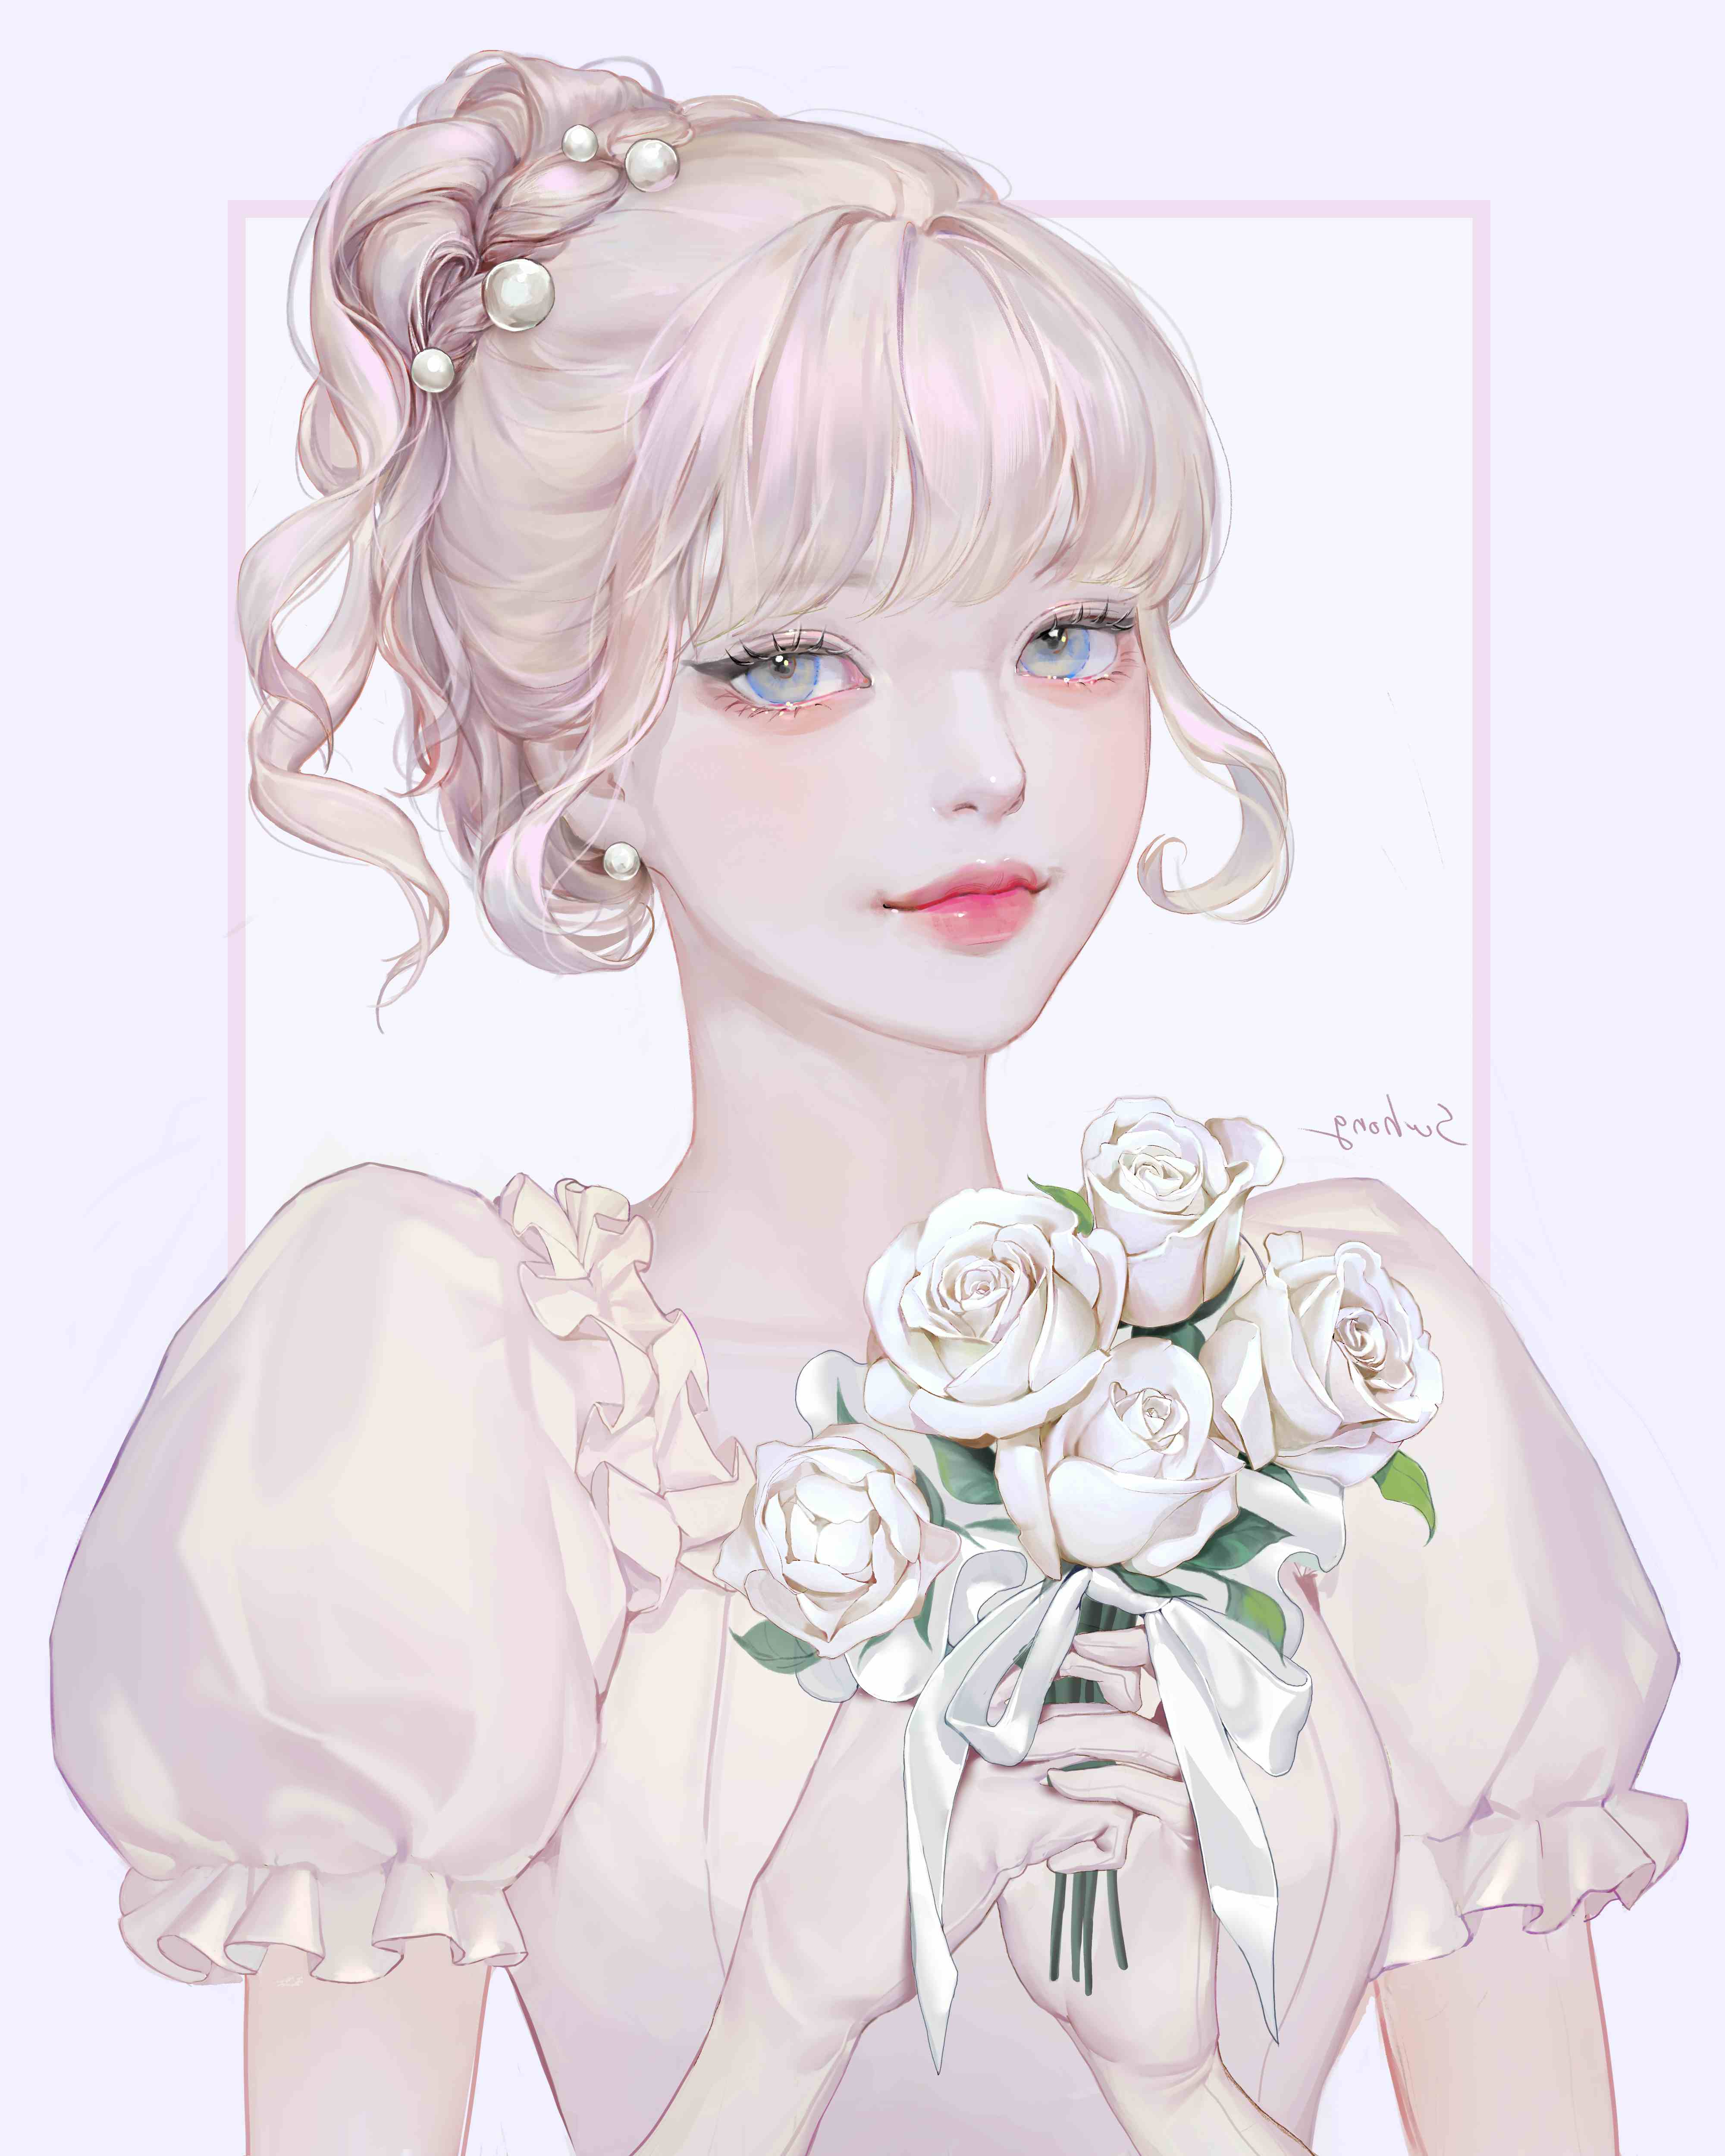 4. White Rose